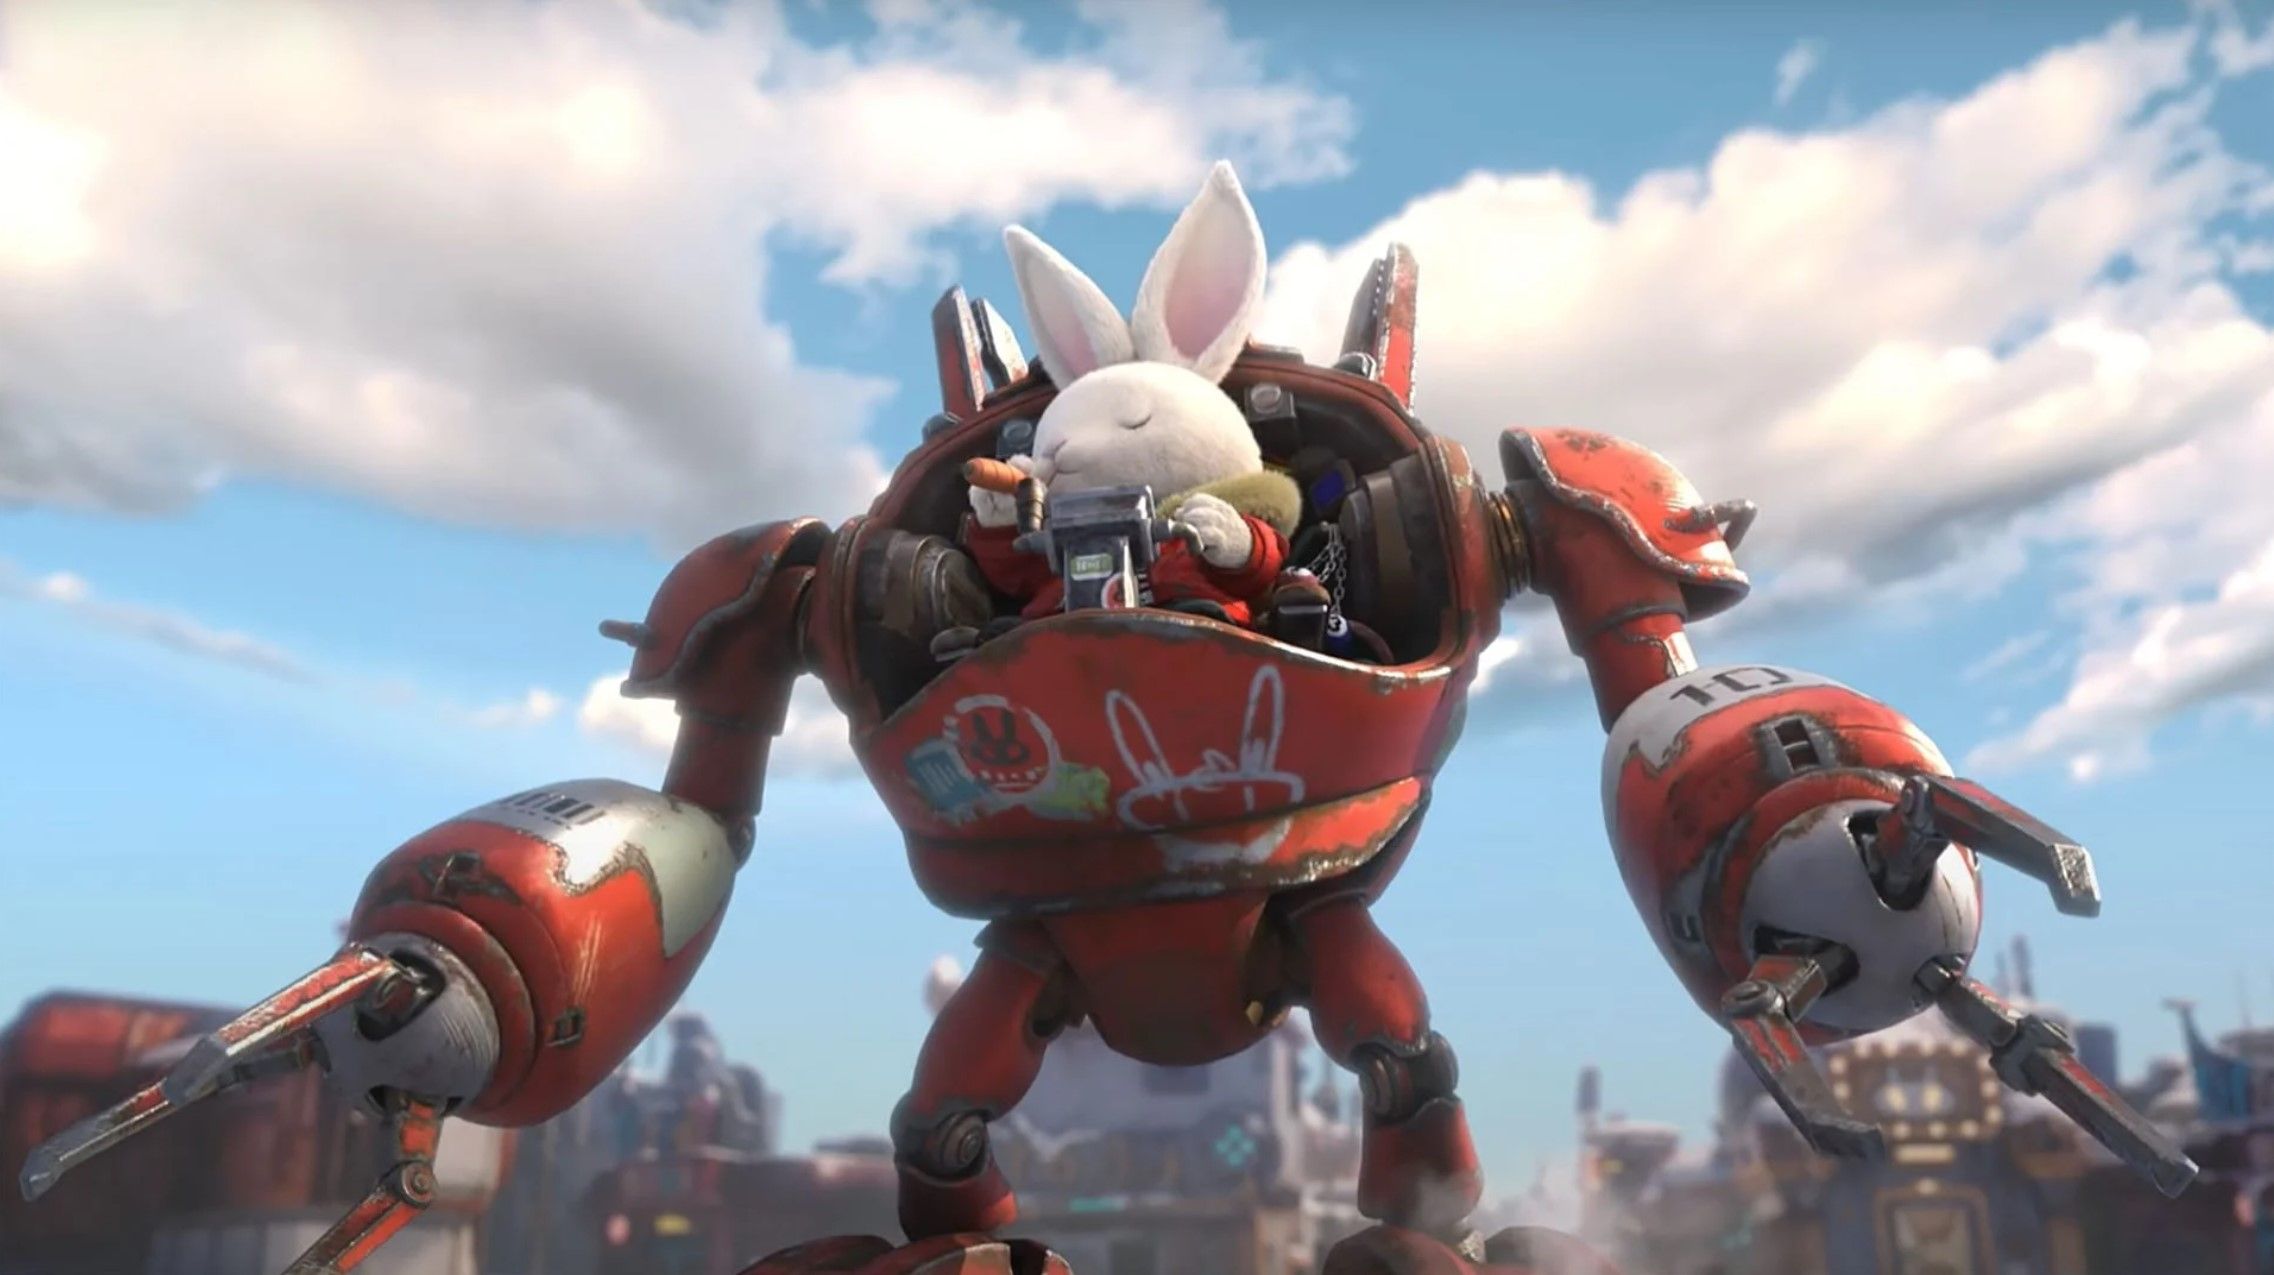 Компания Netease Games объявила о выходе игры Rusty Rabbit, а проект Mugen порадовал новым впечатляющим видеороликом